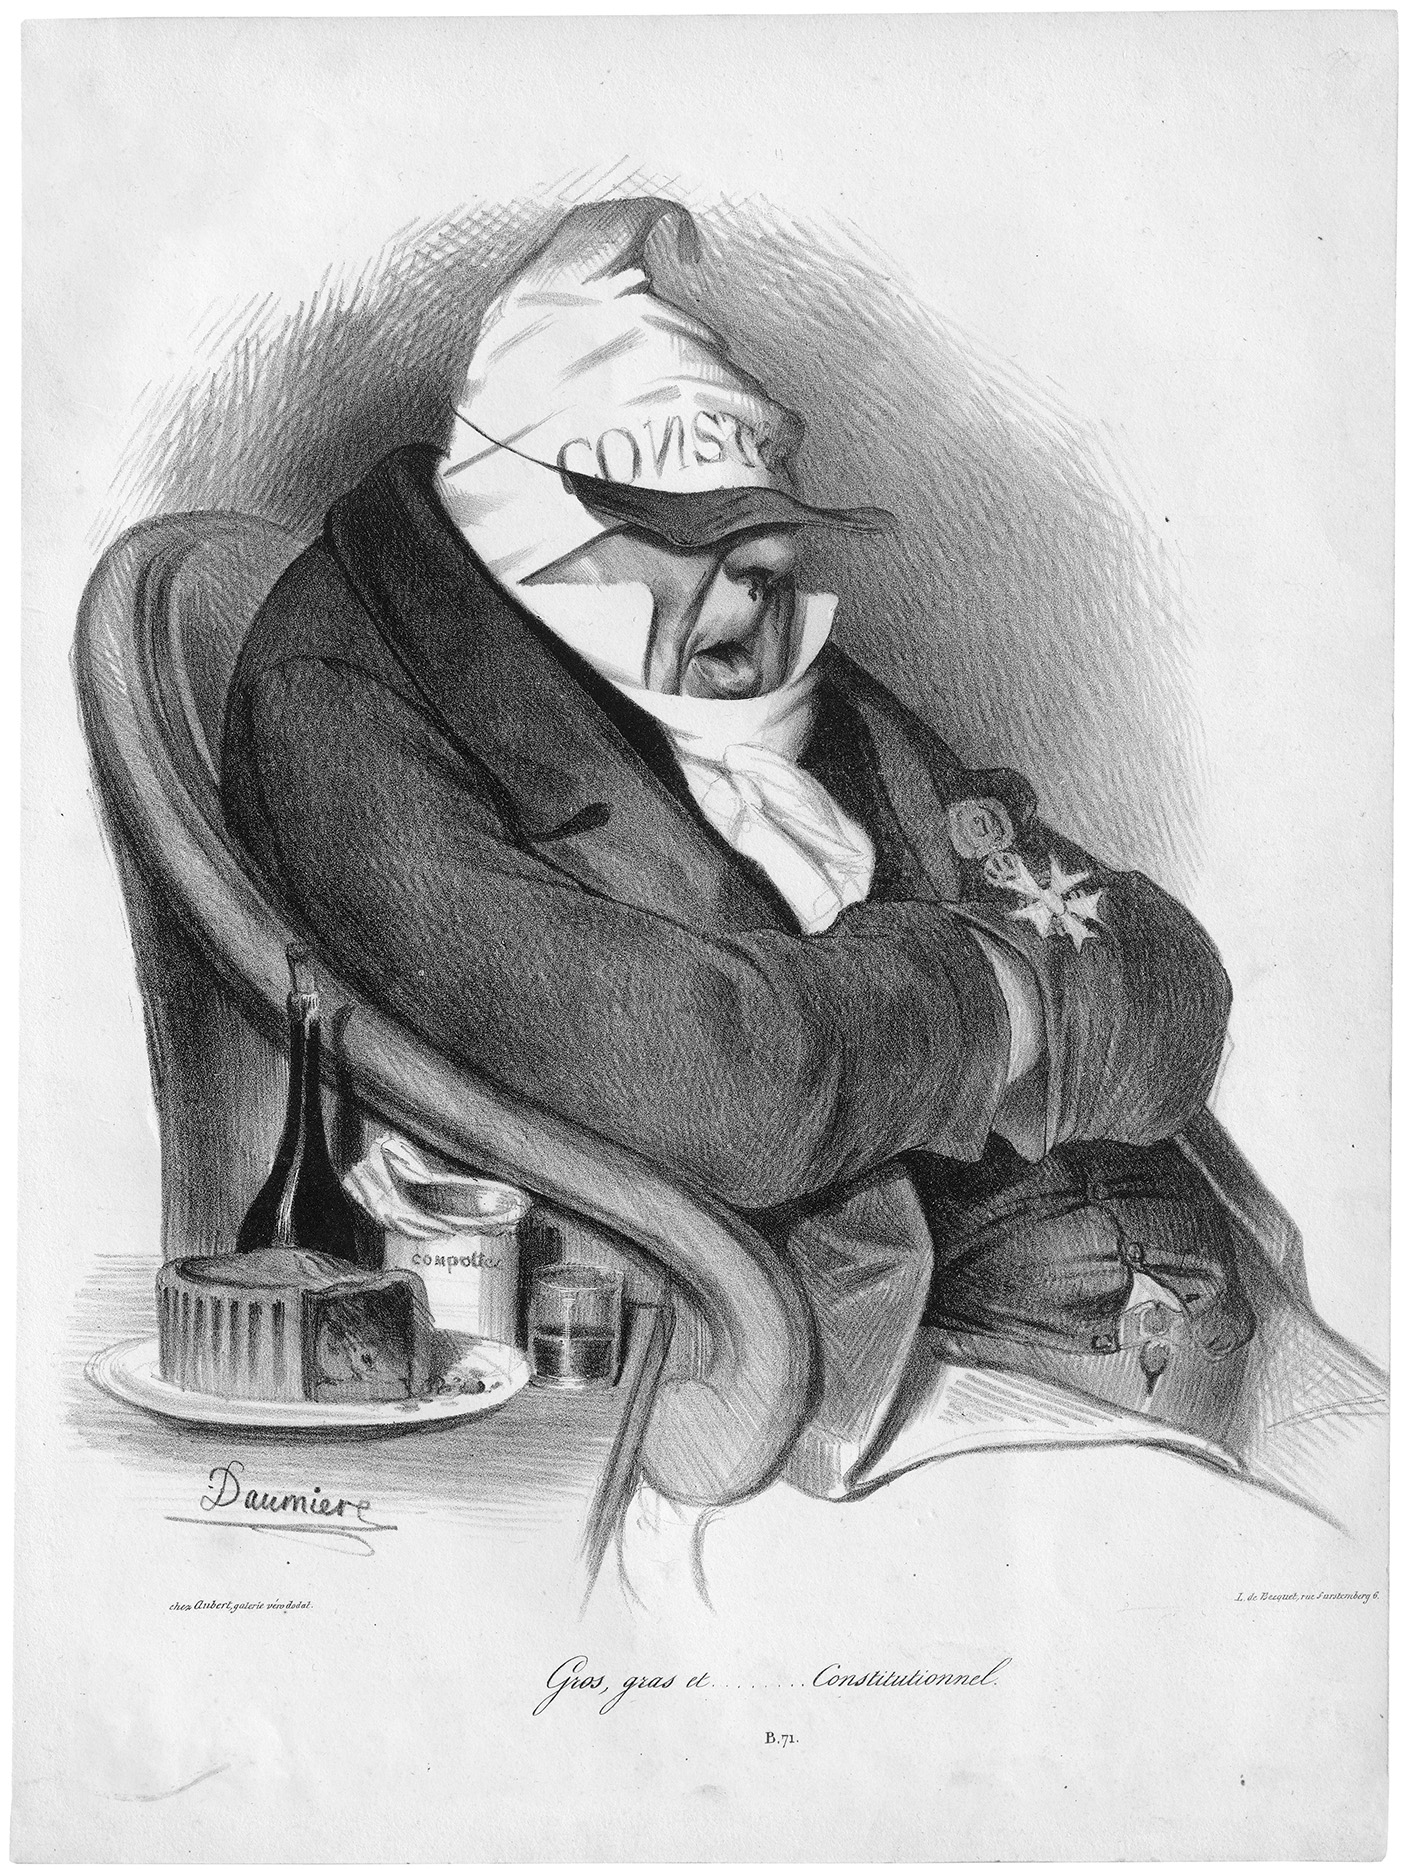 Daumier_Gros gras et Constitutionnel